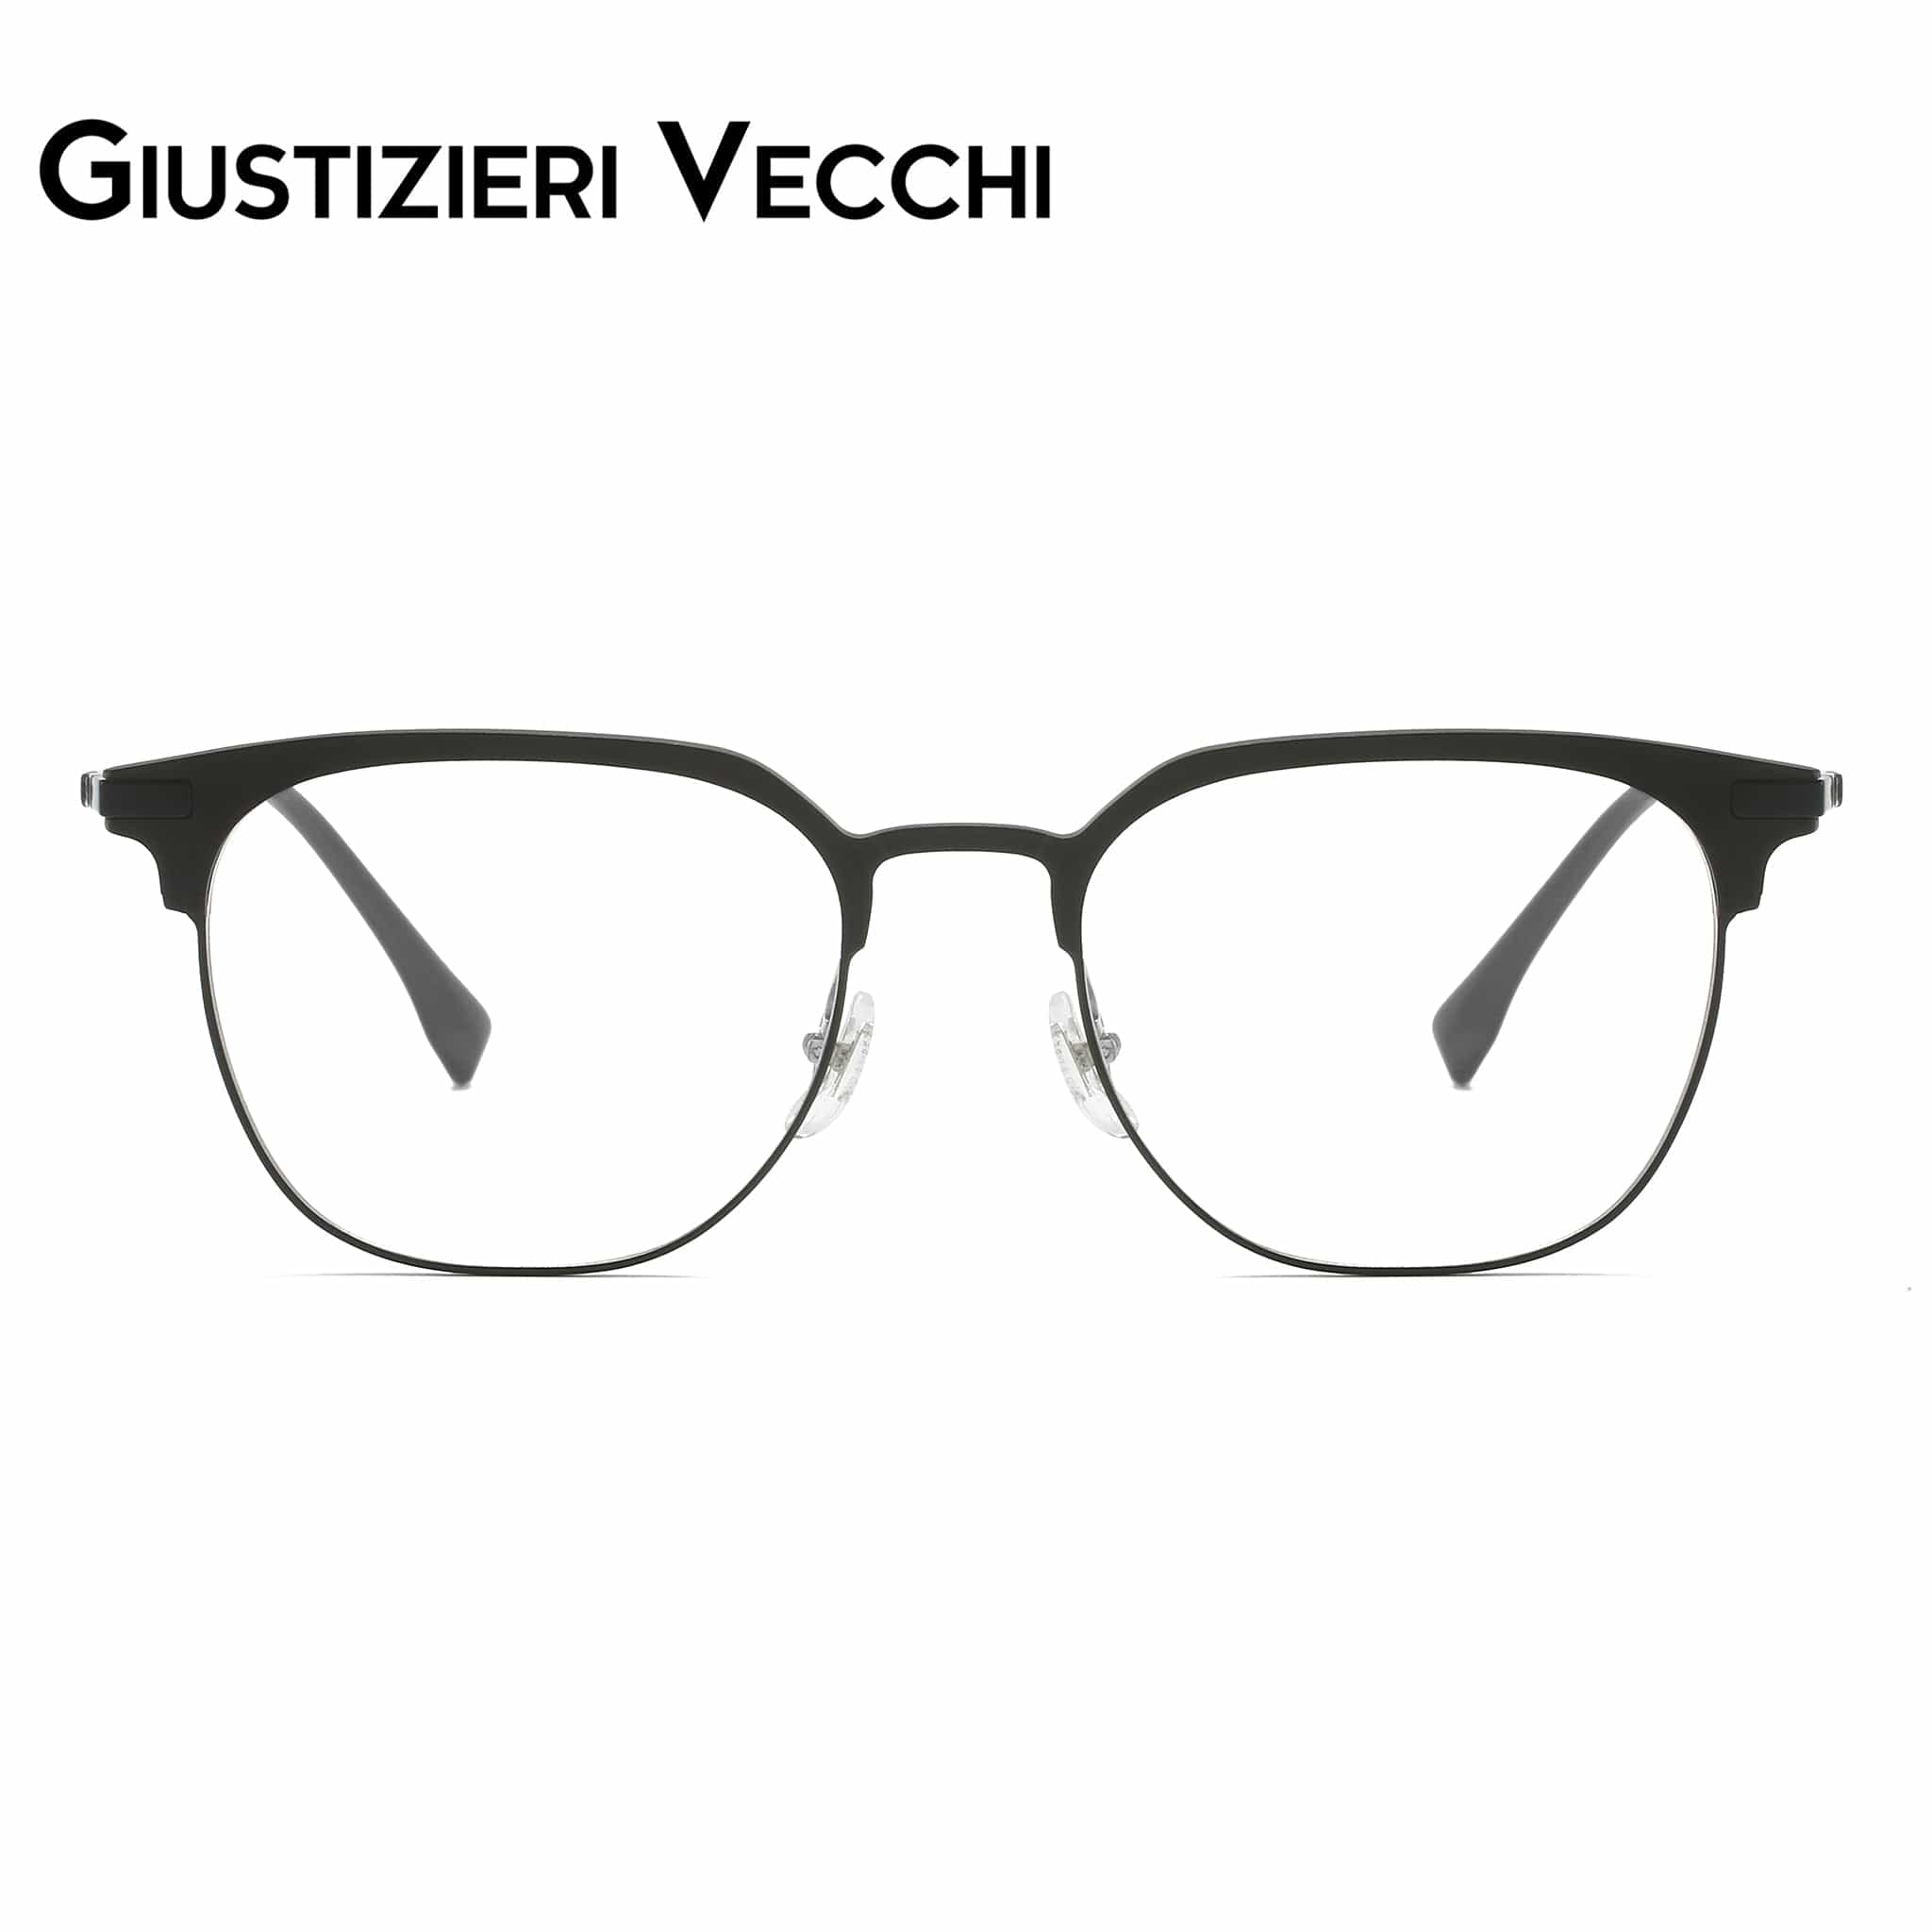 GIUSTIZIERI VECCHI Eyeglasses Small / Black MindHaze Duo